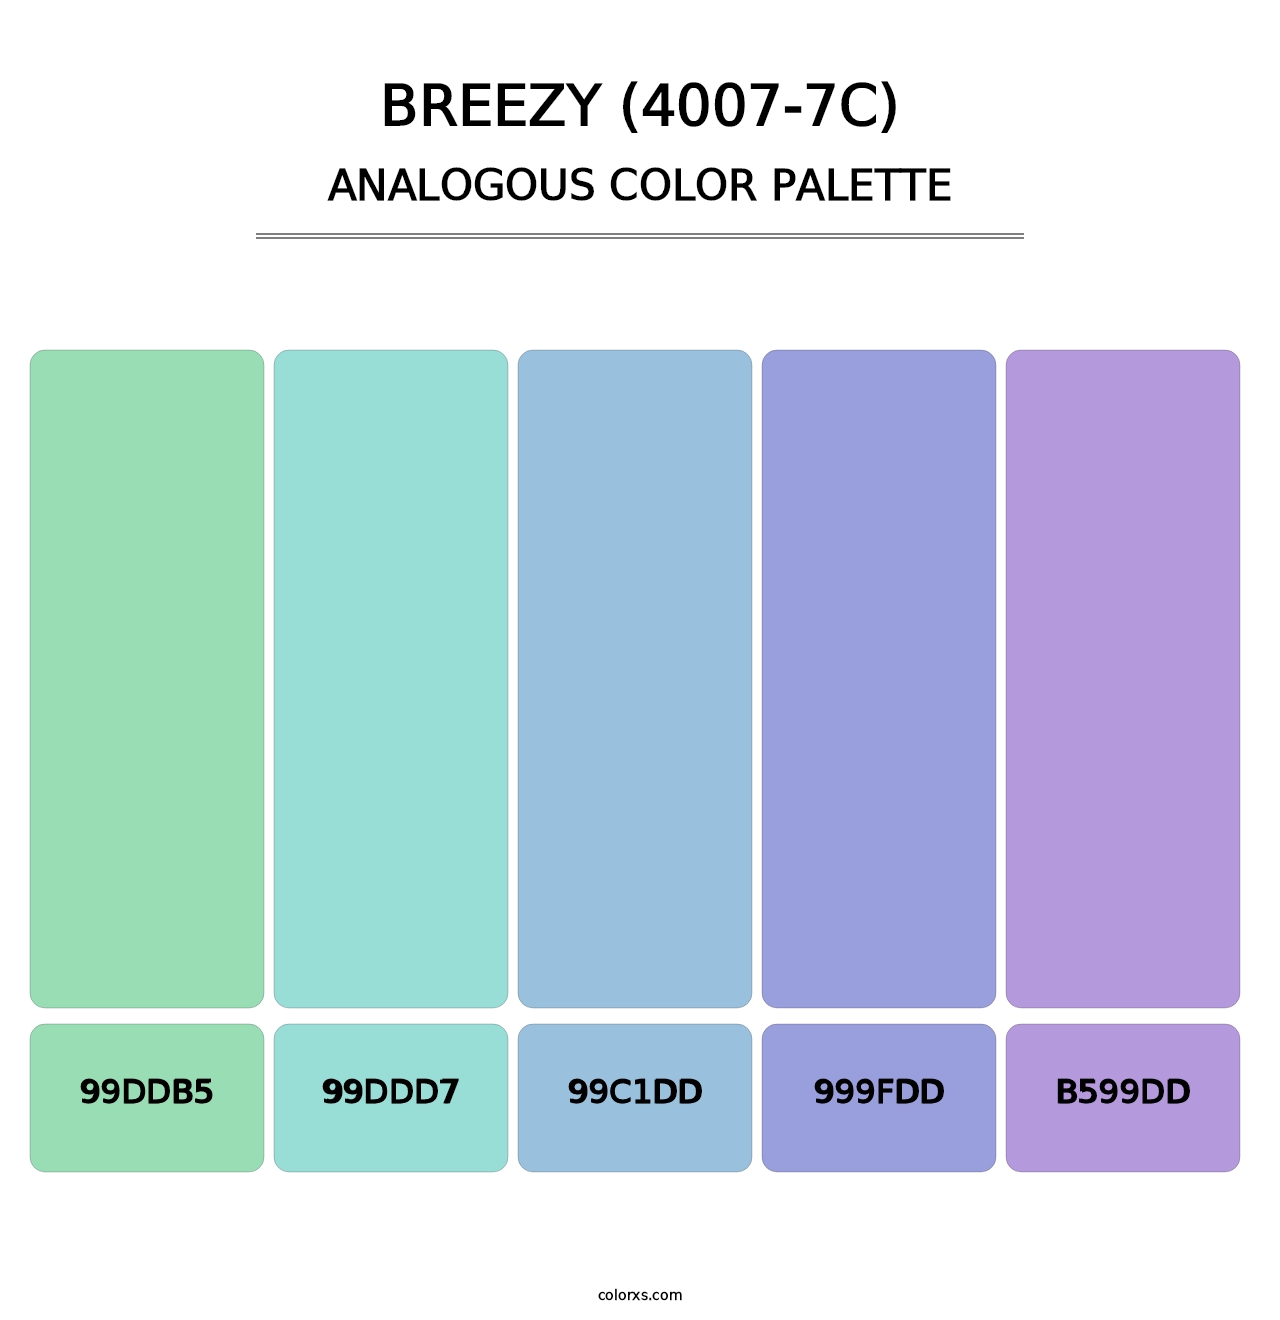 Breezy (4007-7C) - Analogous Color Palette